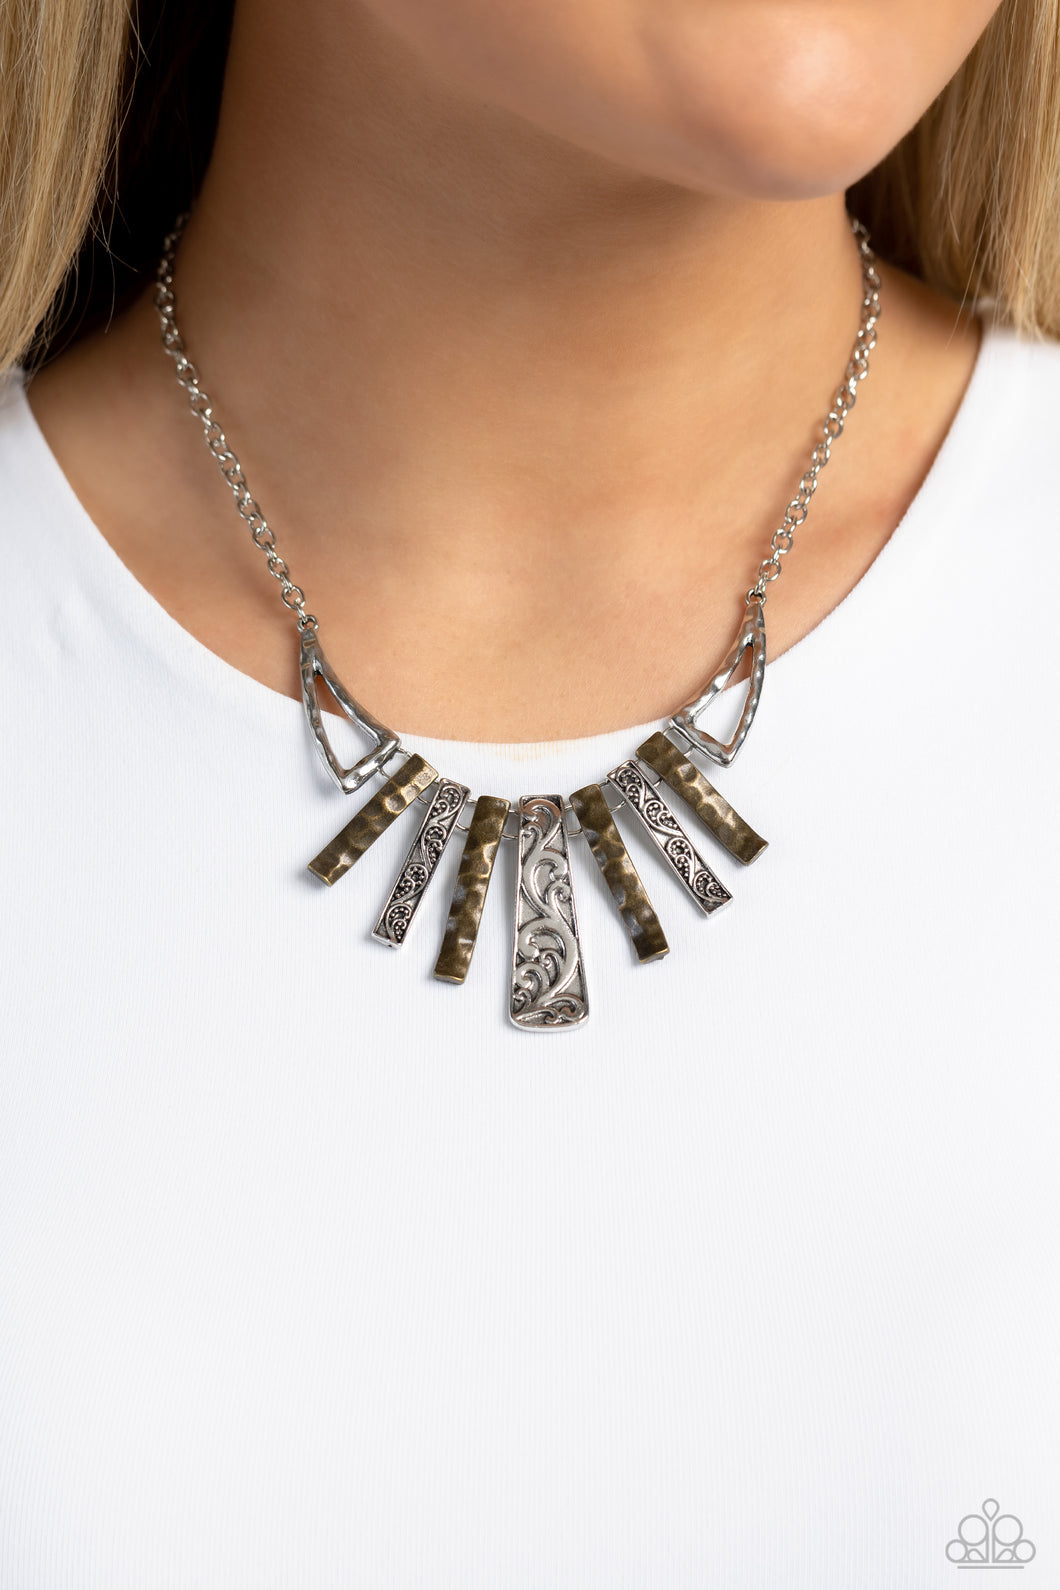 Paparazzi “Paisley Pastime” Multi Necklace Earring Set - Cindysblingboutique